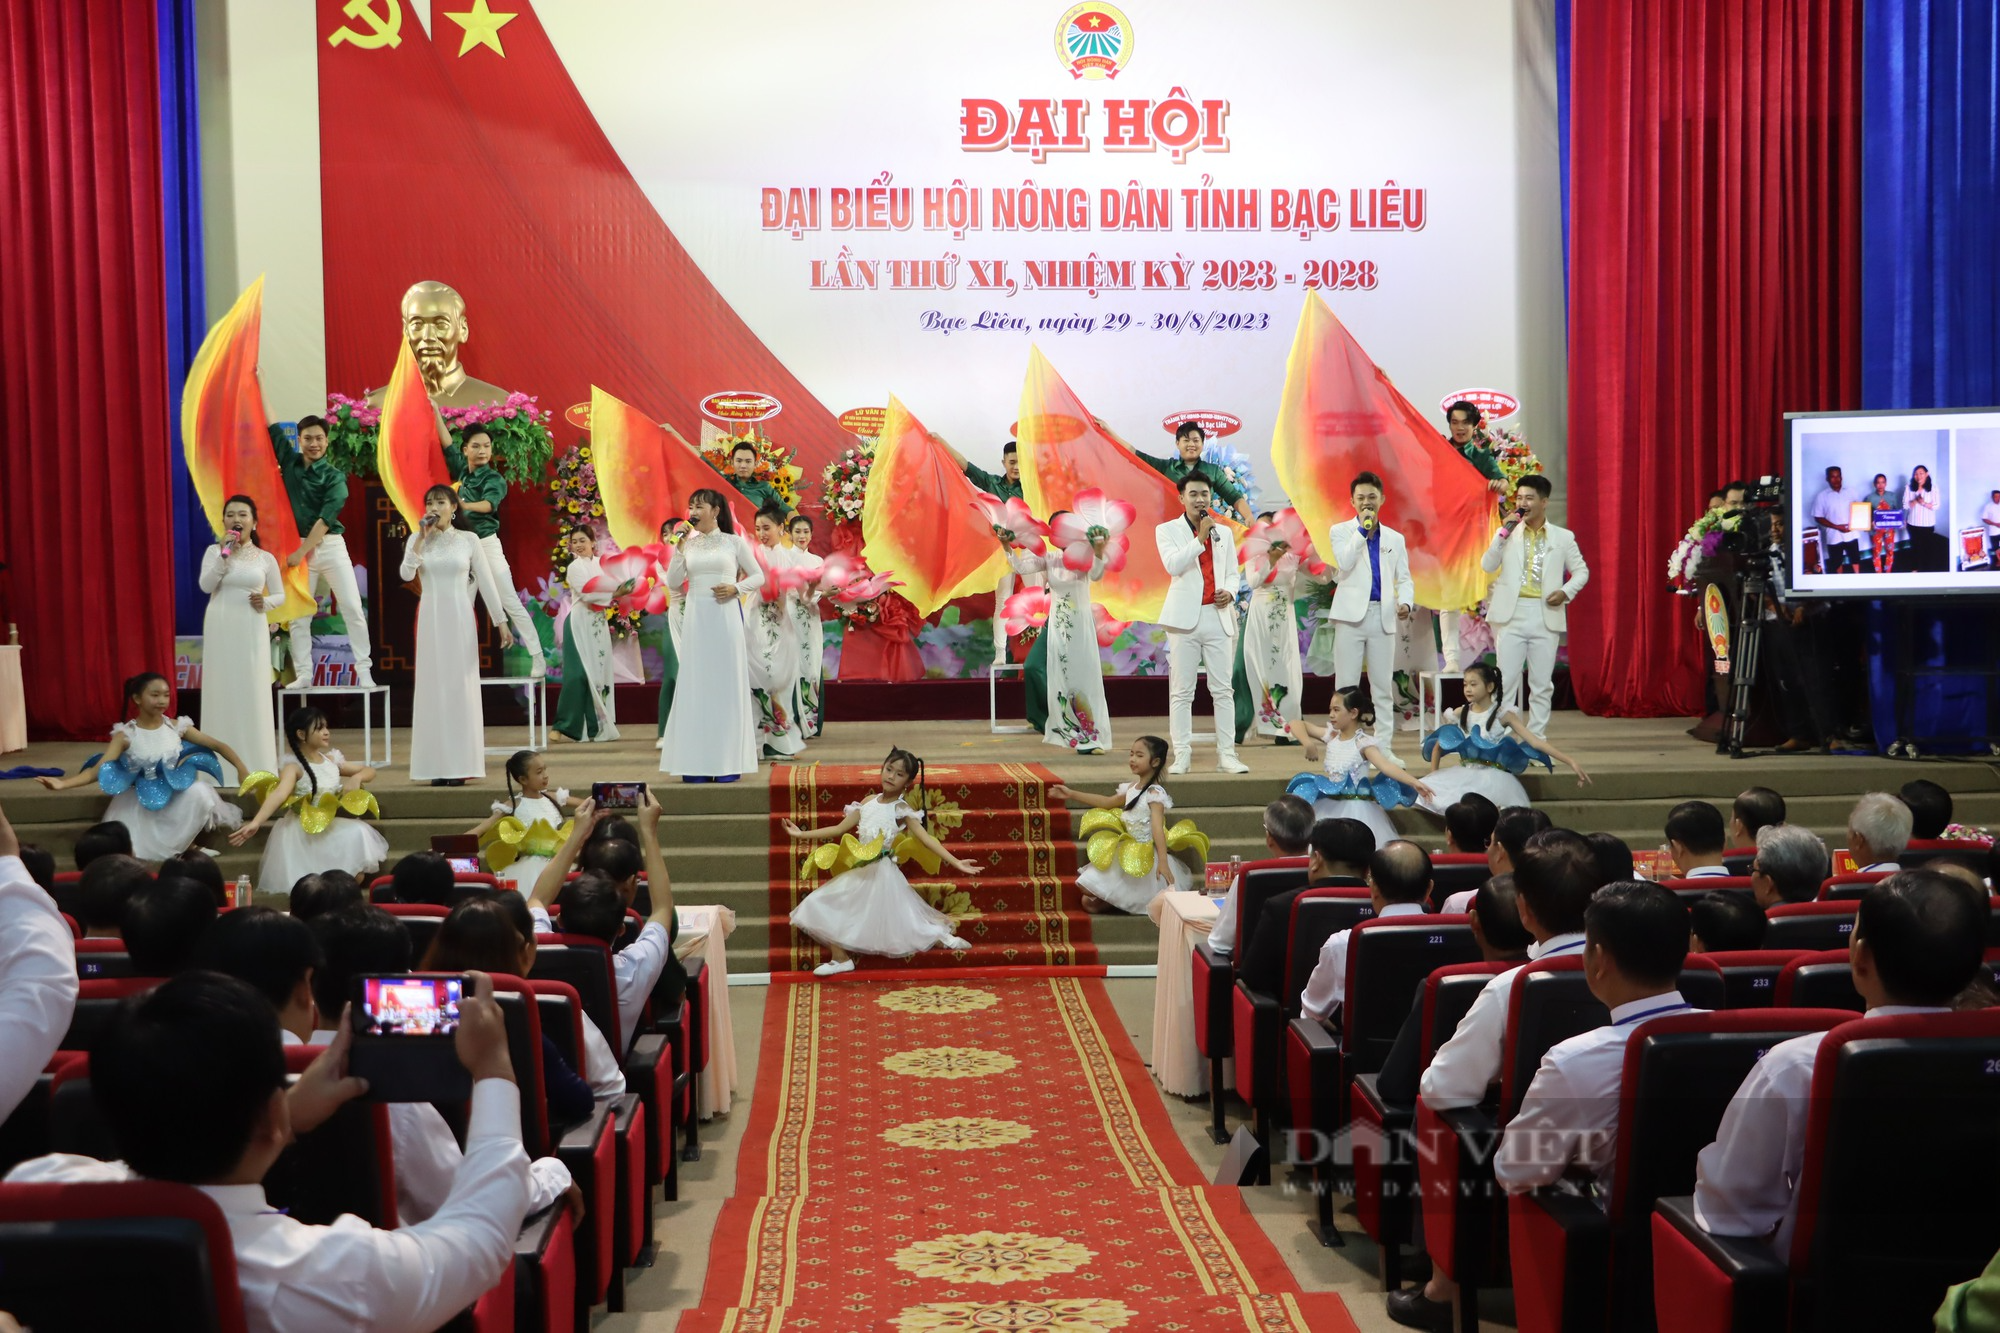 Bí thư Tỉnh ủy Bạc Liêu và Phó Chủ tịch BCH TƯ Hội NDVN dự, chỉ đạo Đại hội đại biểu Hội Nông dân tỉnh - Ảnh 3.